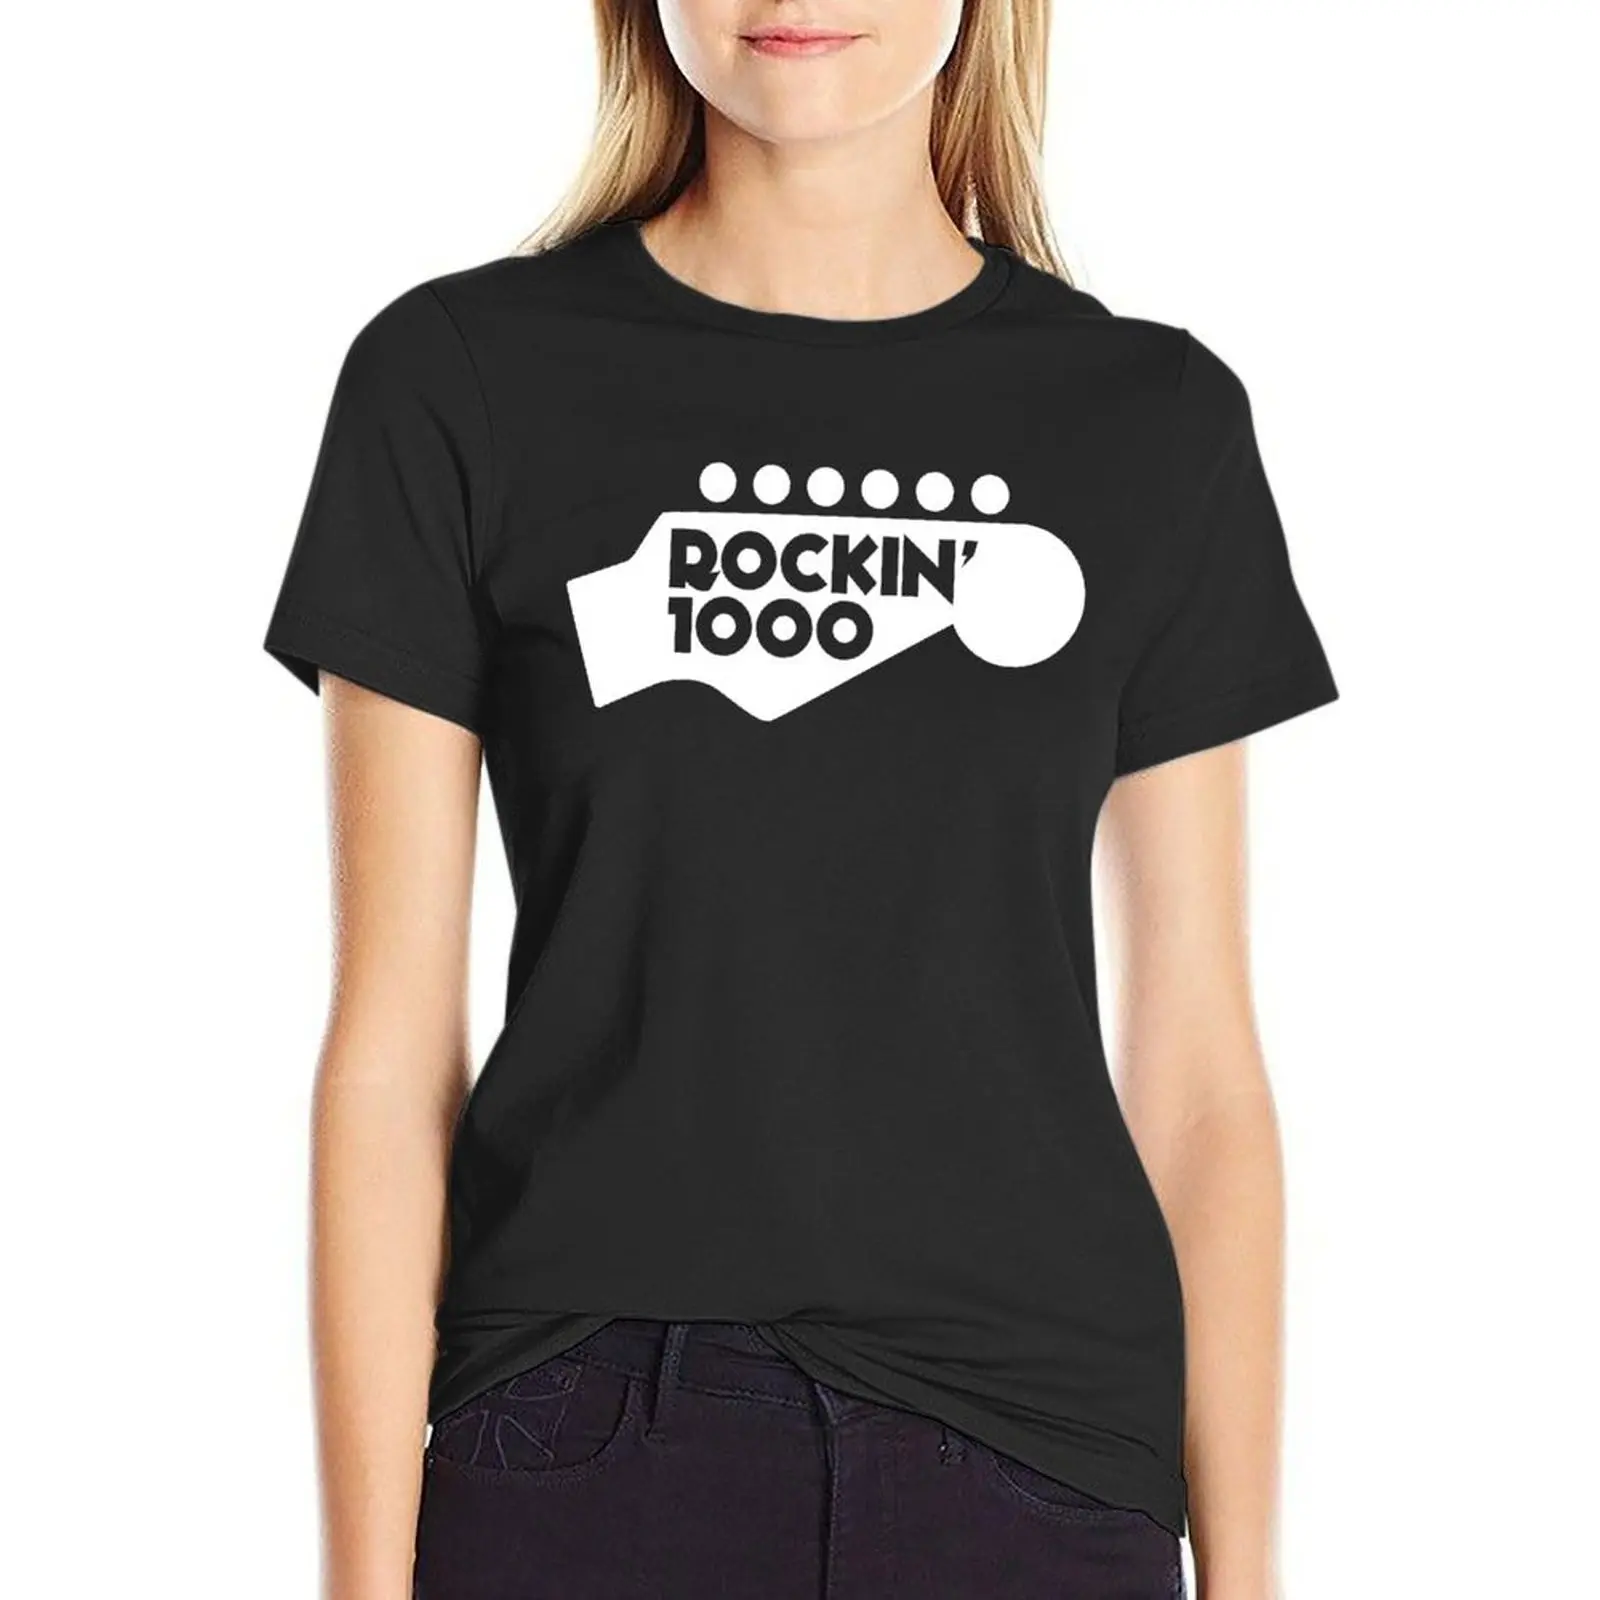 

Rockin'1000 White Logo Original T-Shirt tshirts woman t-shirt dress for Women sexy rock and roll t shirts for Women